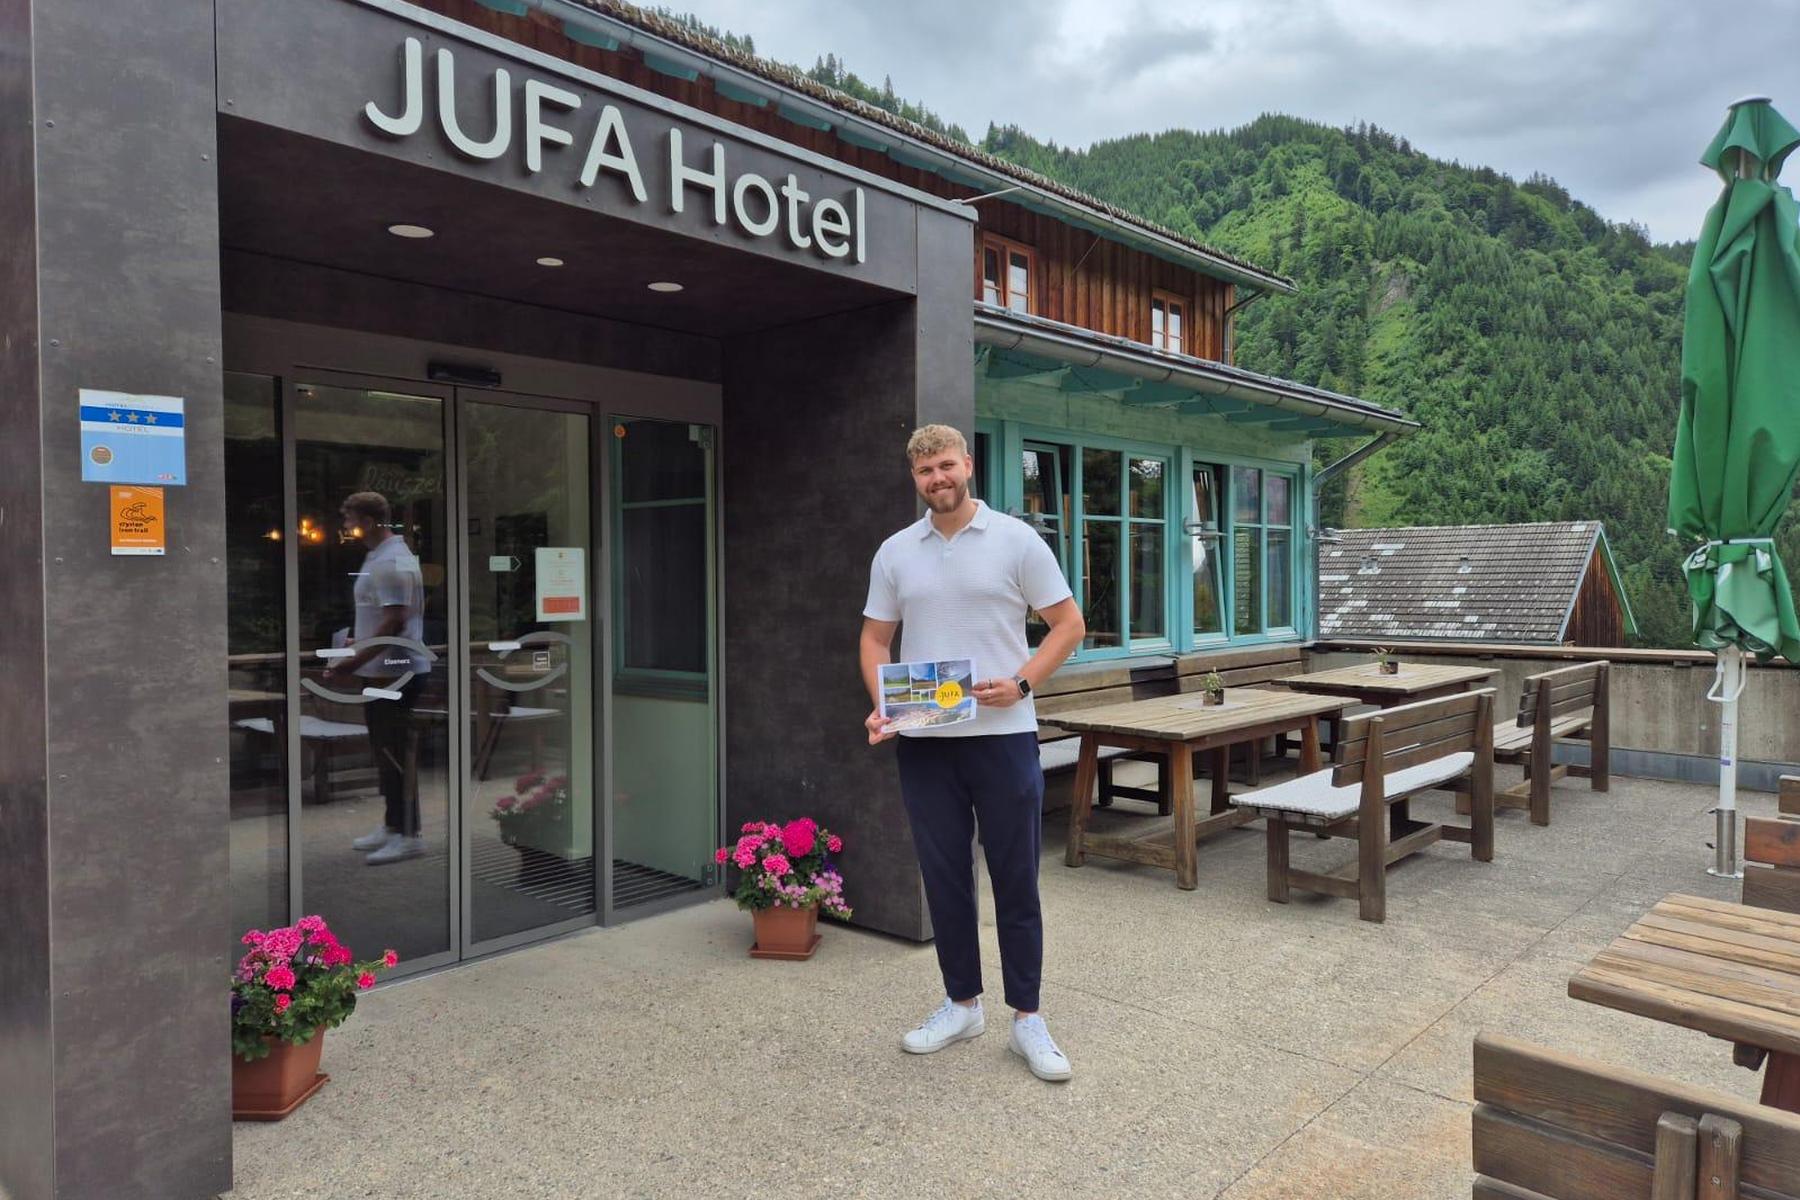 JUFA Hotel Eisenerzer Ramsau: Neuer Hoteldirektor sorgt für frischen Wind in Eisenerz